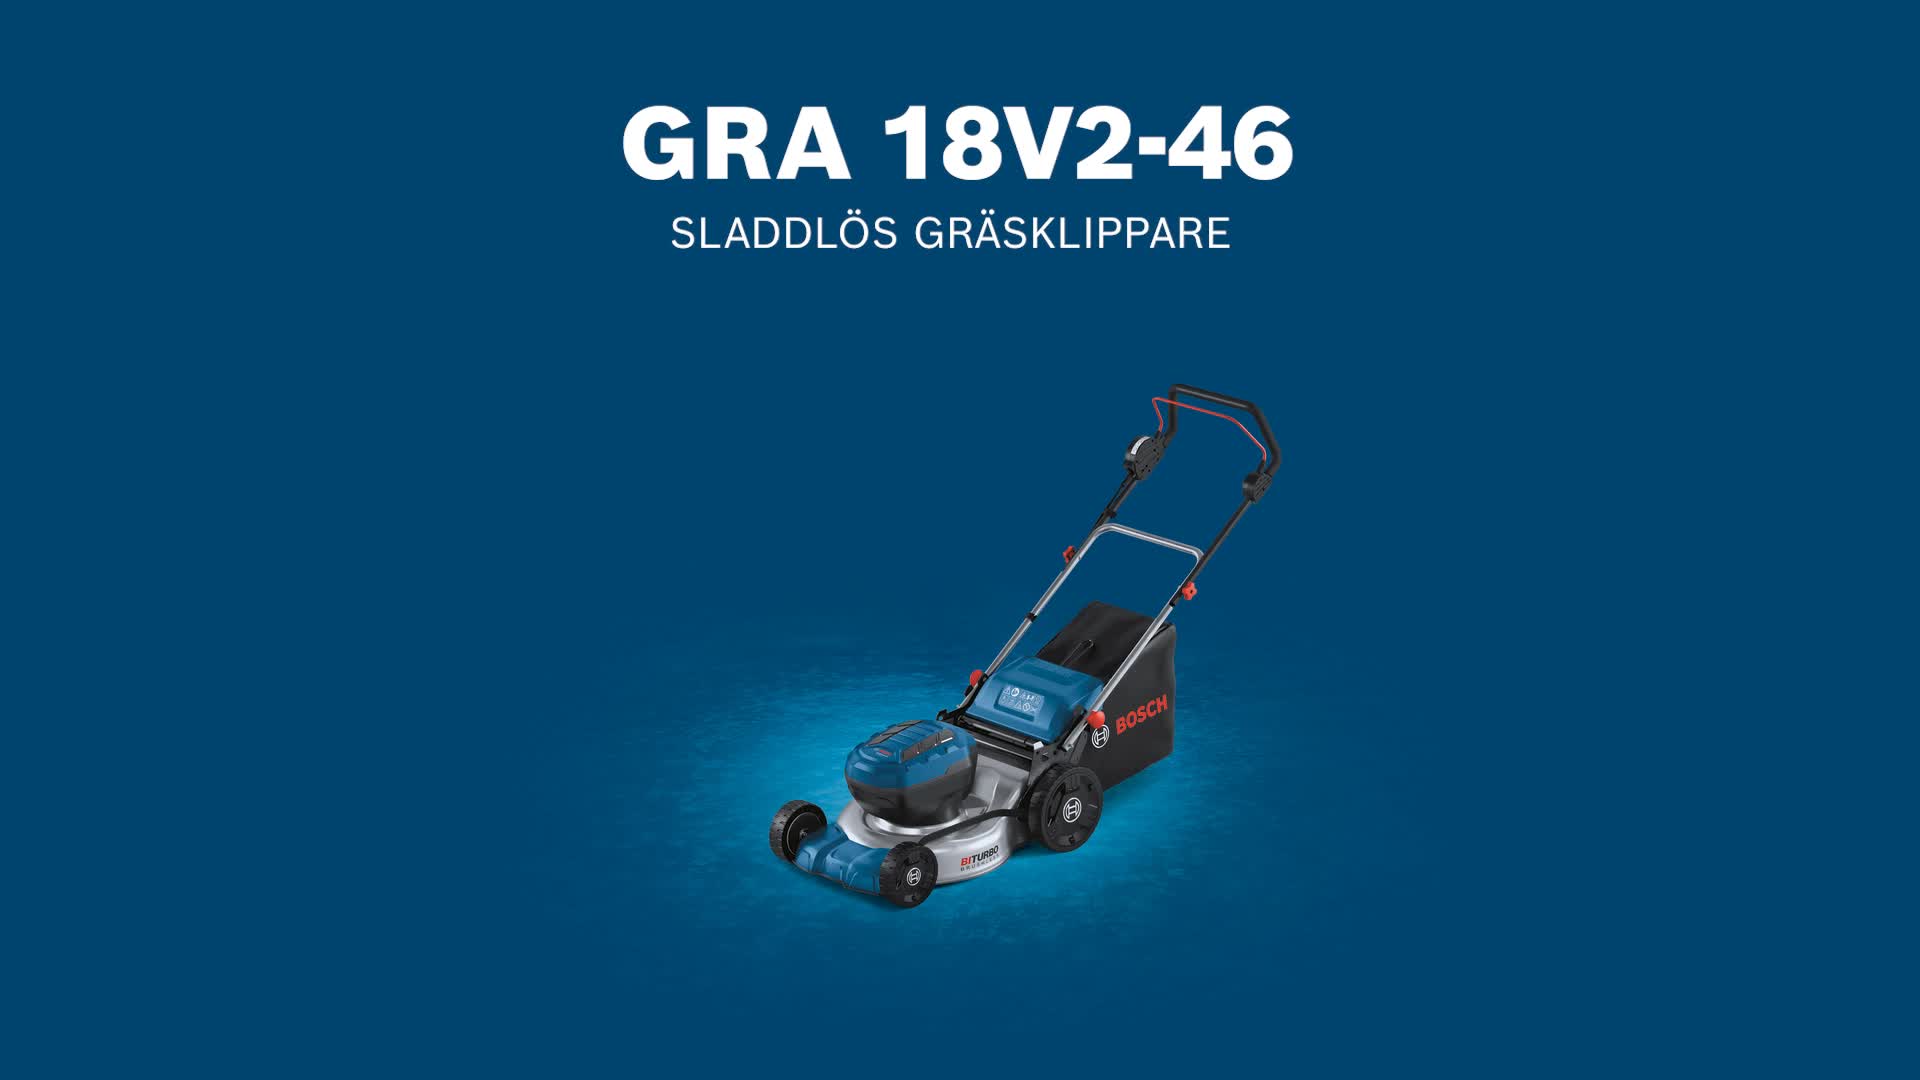 GRA 18V2-46